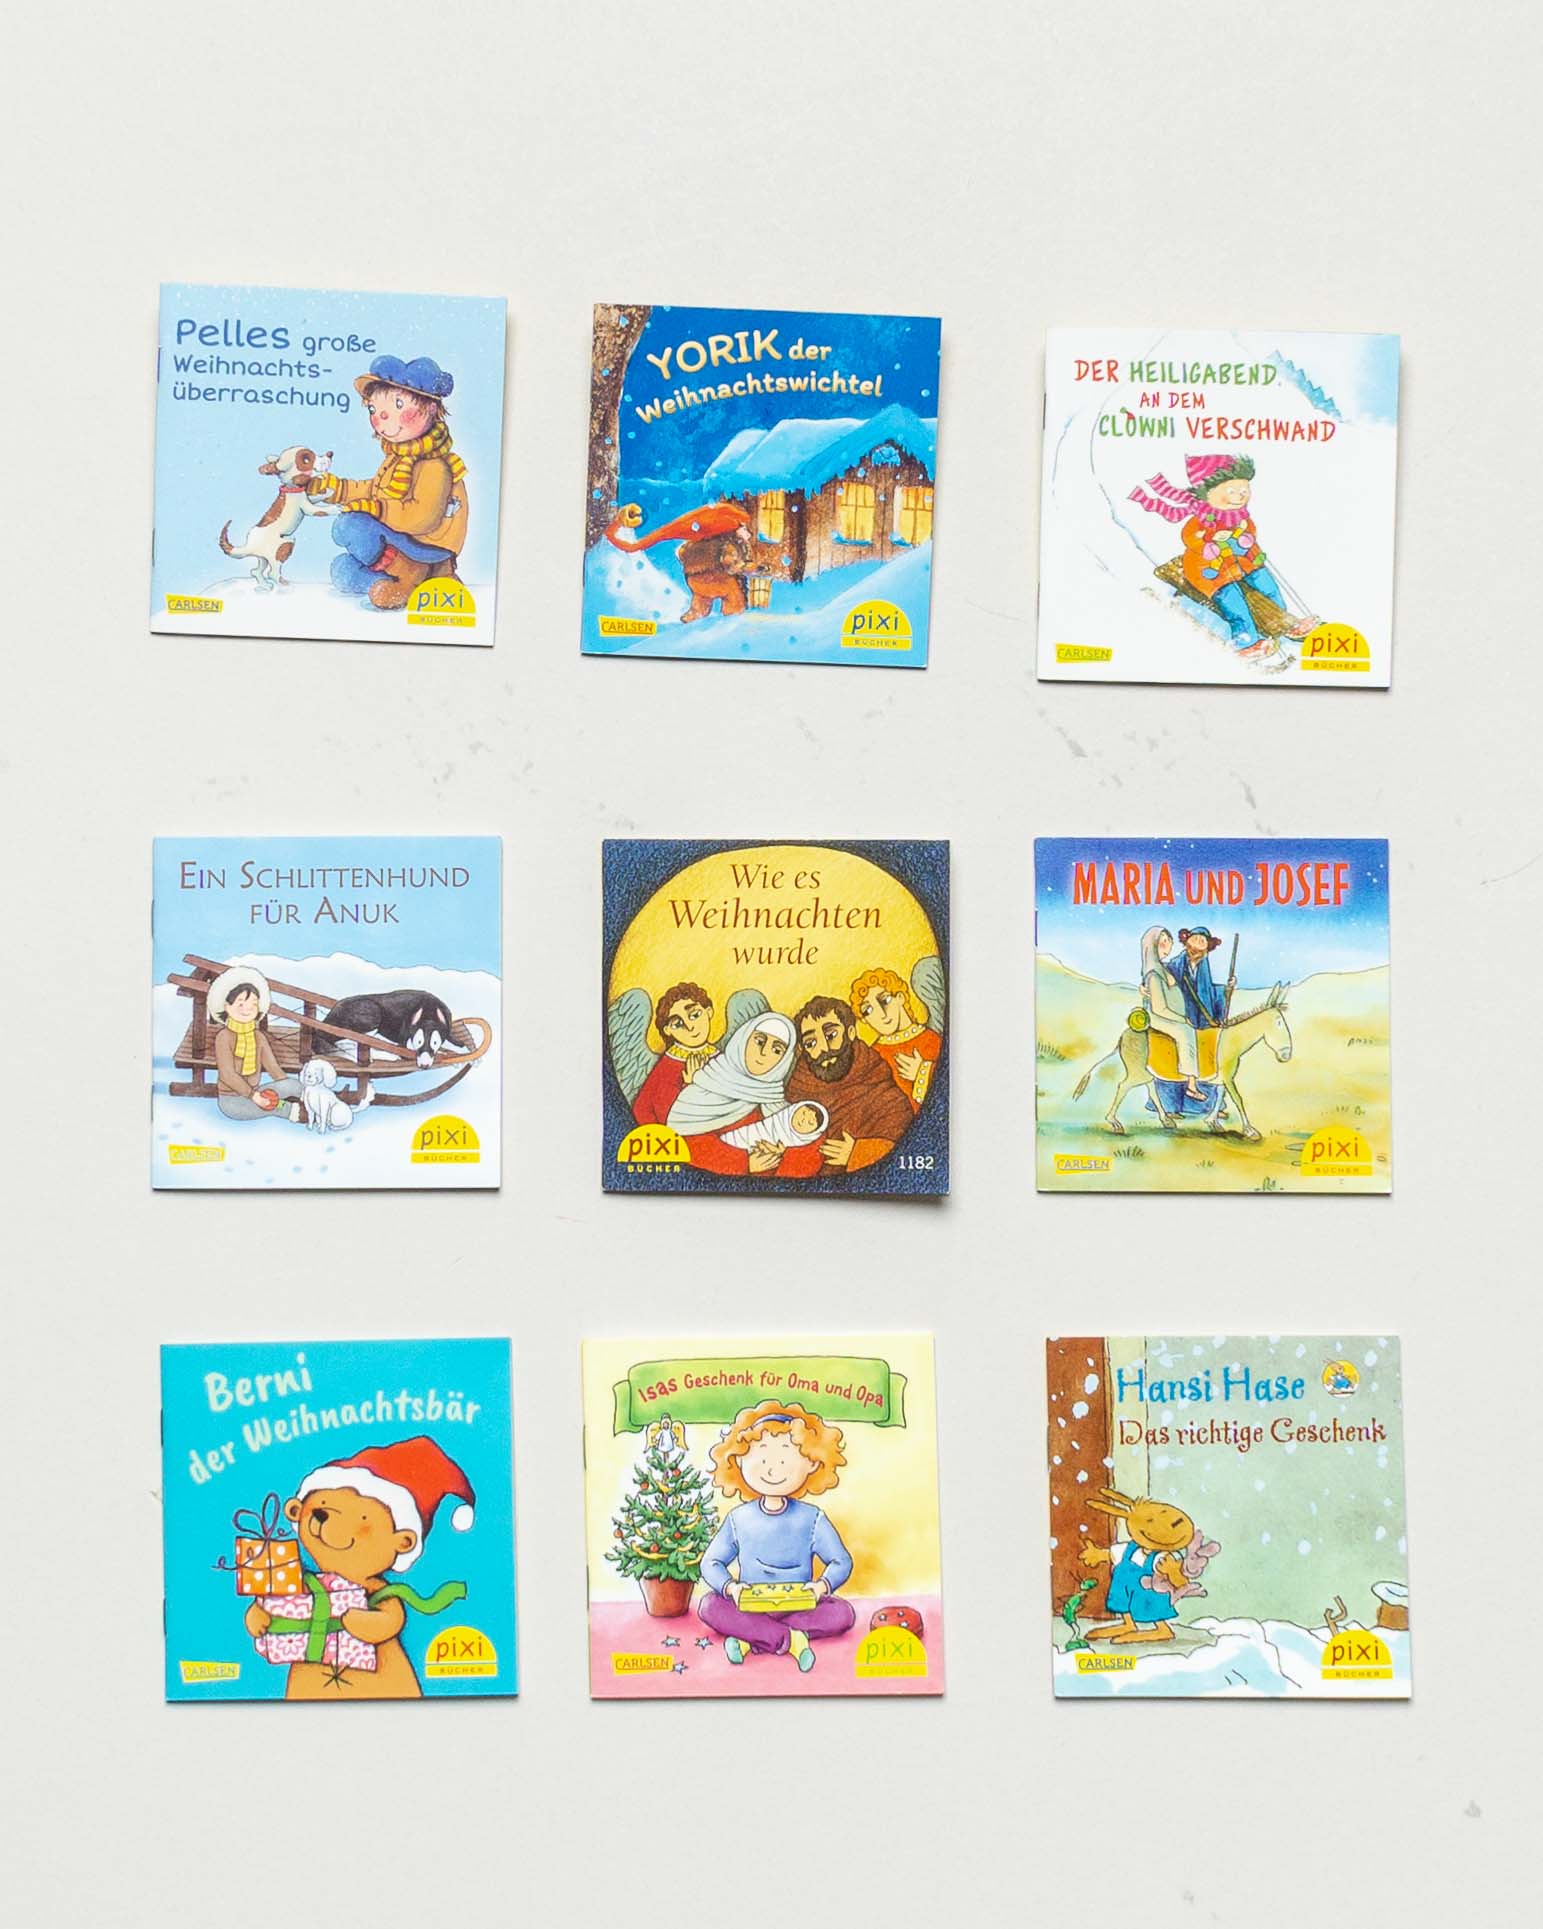 9 Pixi Bücher – Weihnachten Minibücher Set